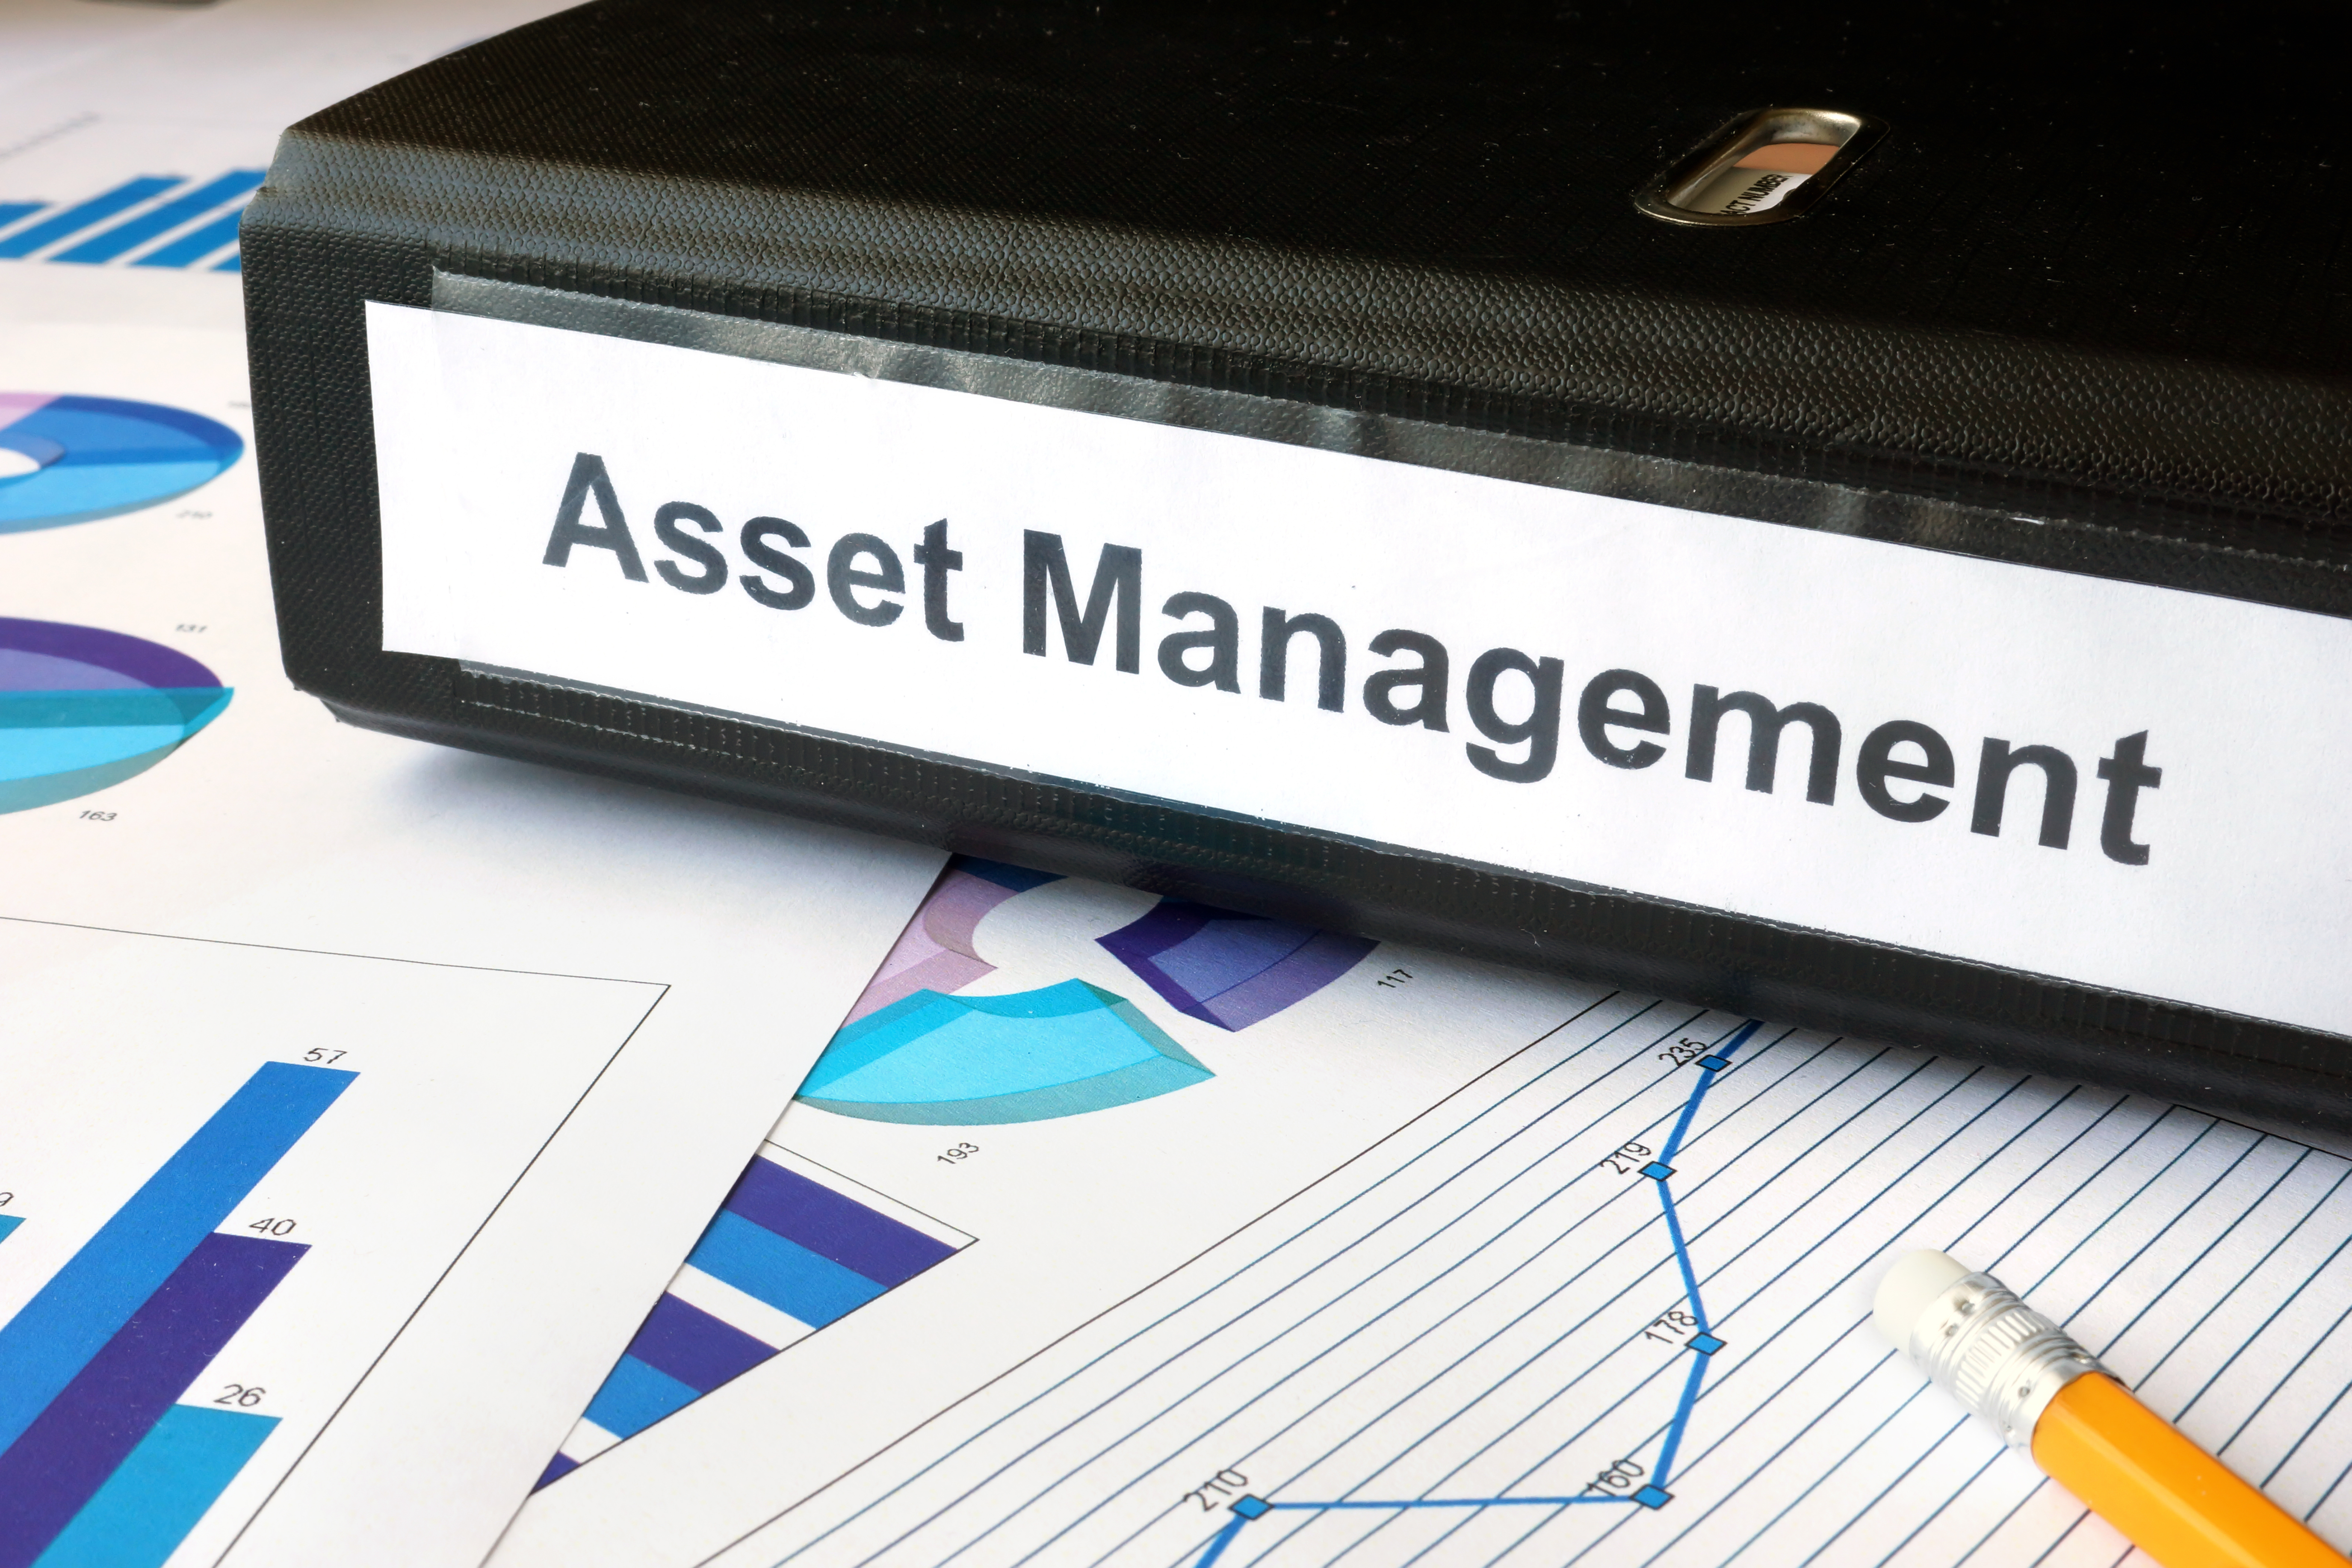 Enterprise asset management